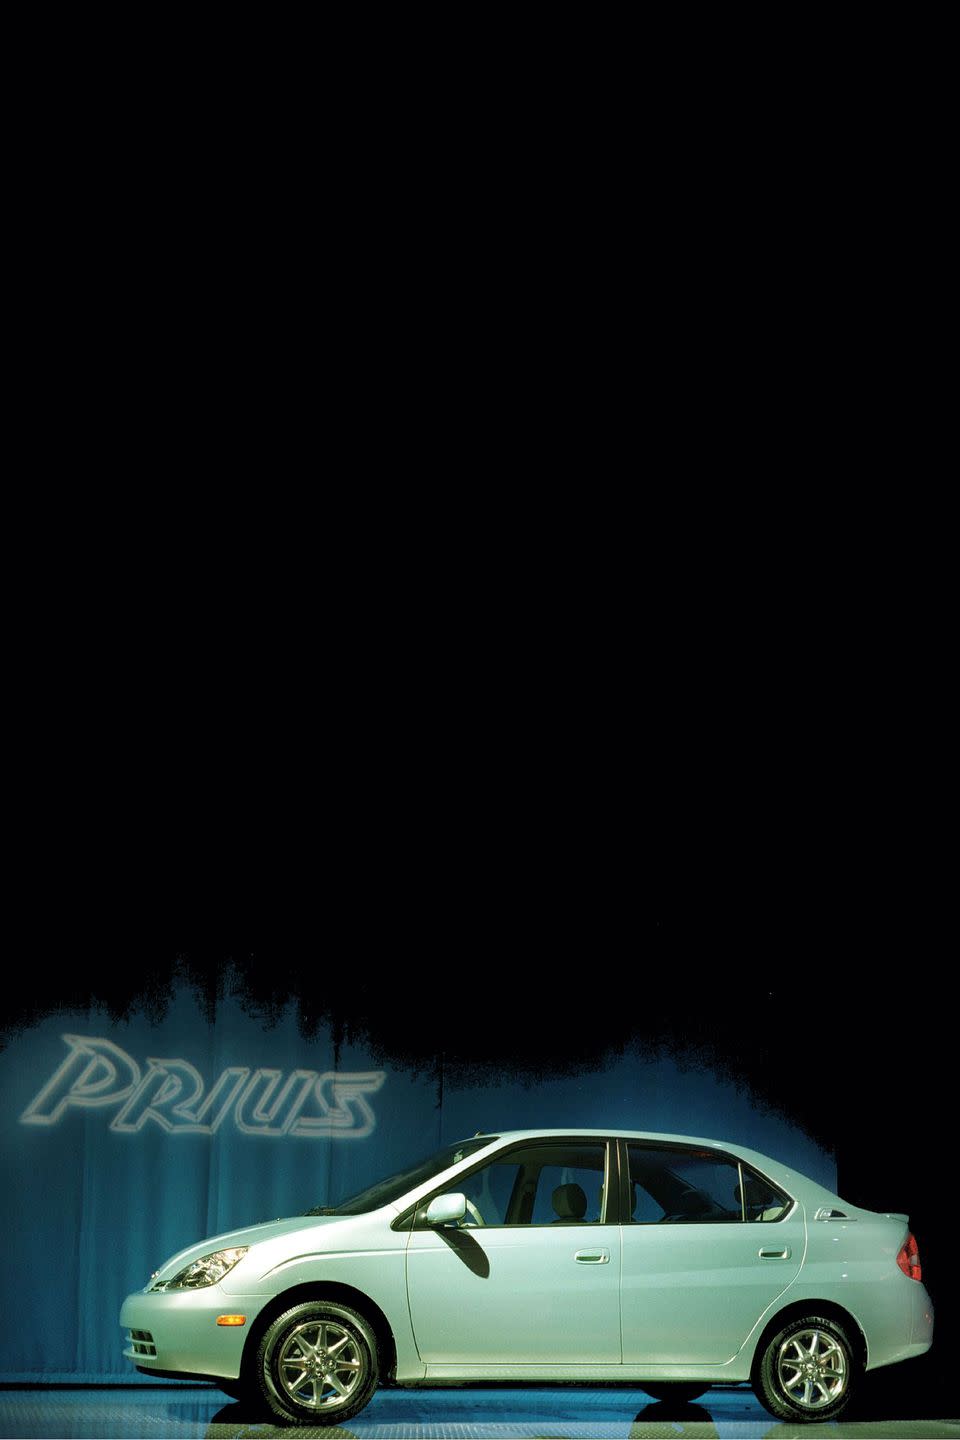 2001: Toyota Prius